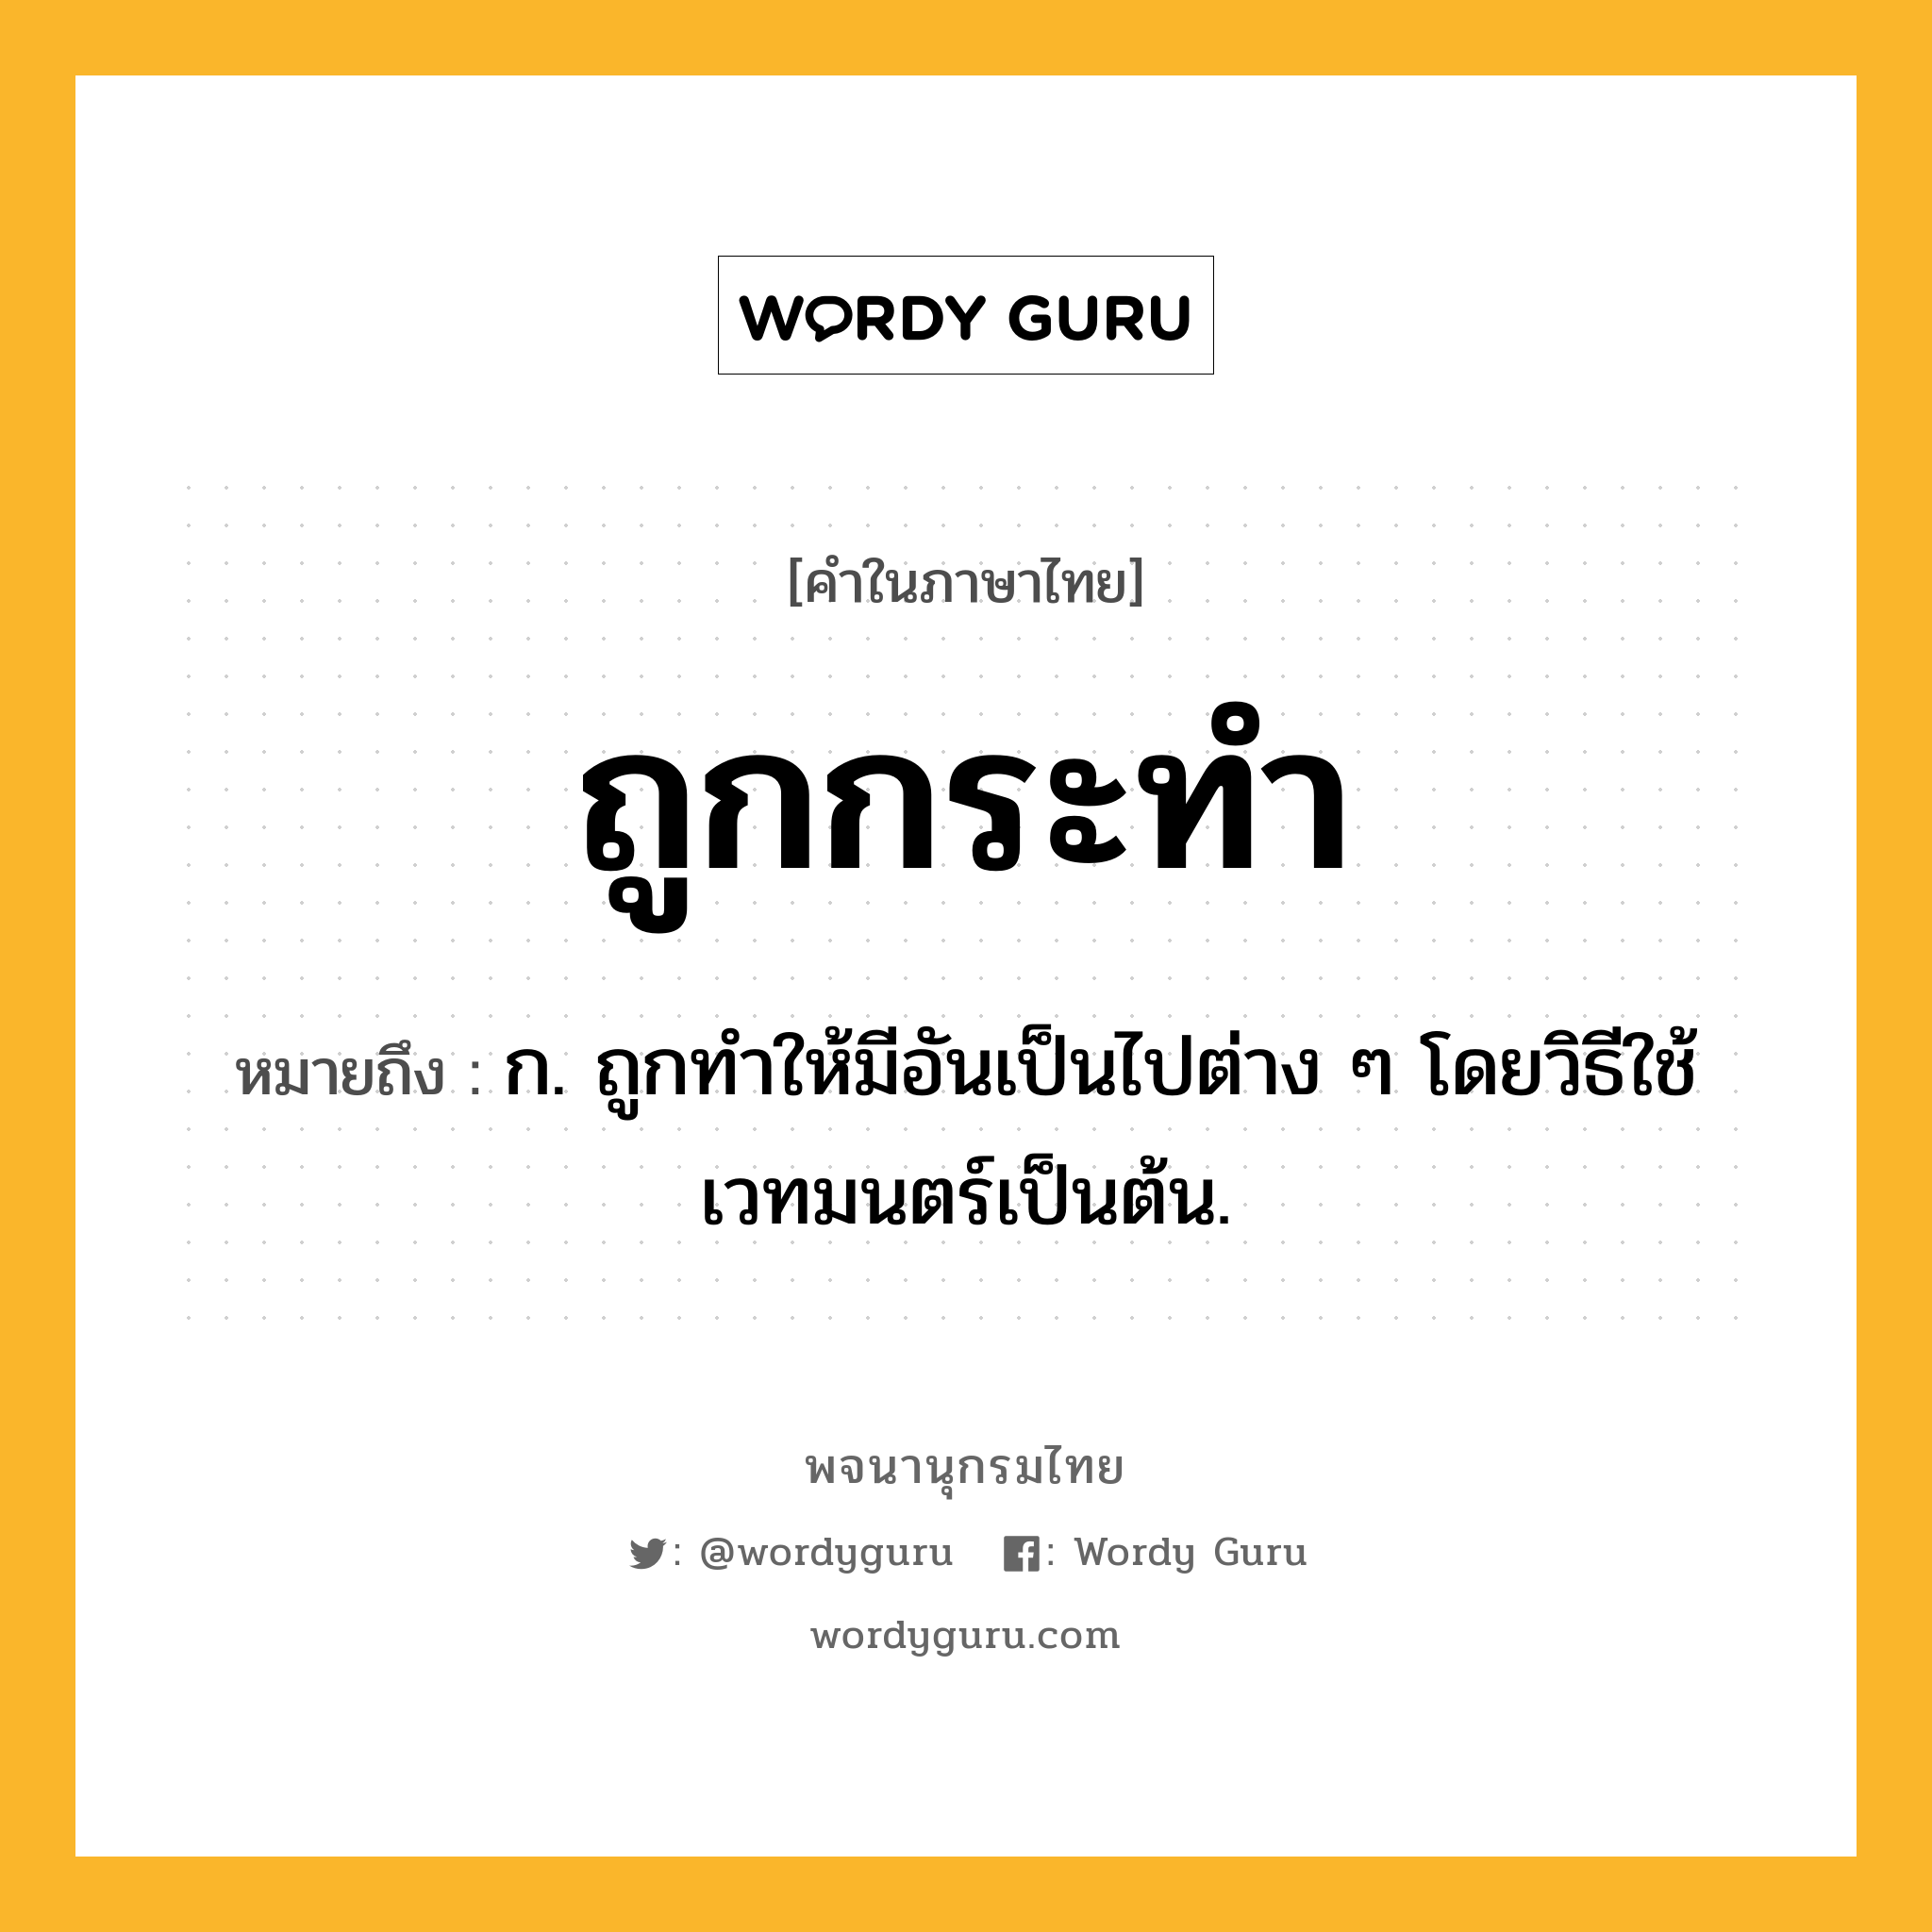 ถูกกระทำ ความหมาย หมายถึงอะไร?, คำในภาษาไทย ถูกกระทำ หมายถึง ก. ถูกทำให้มีอันเป็นไปต่าง ๆ โดยวิธีใช้เวทมนตร์เป็นต้น.